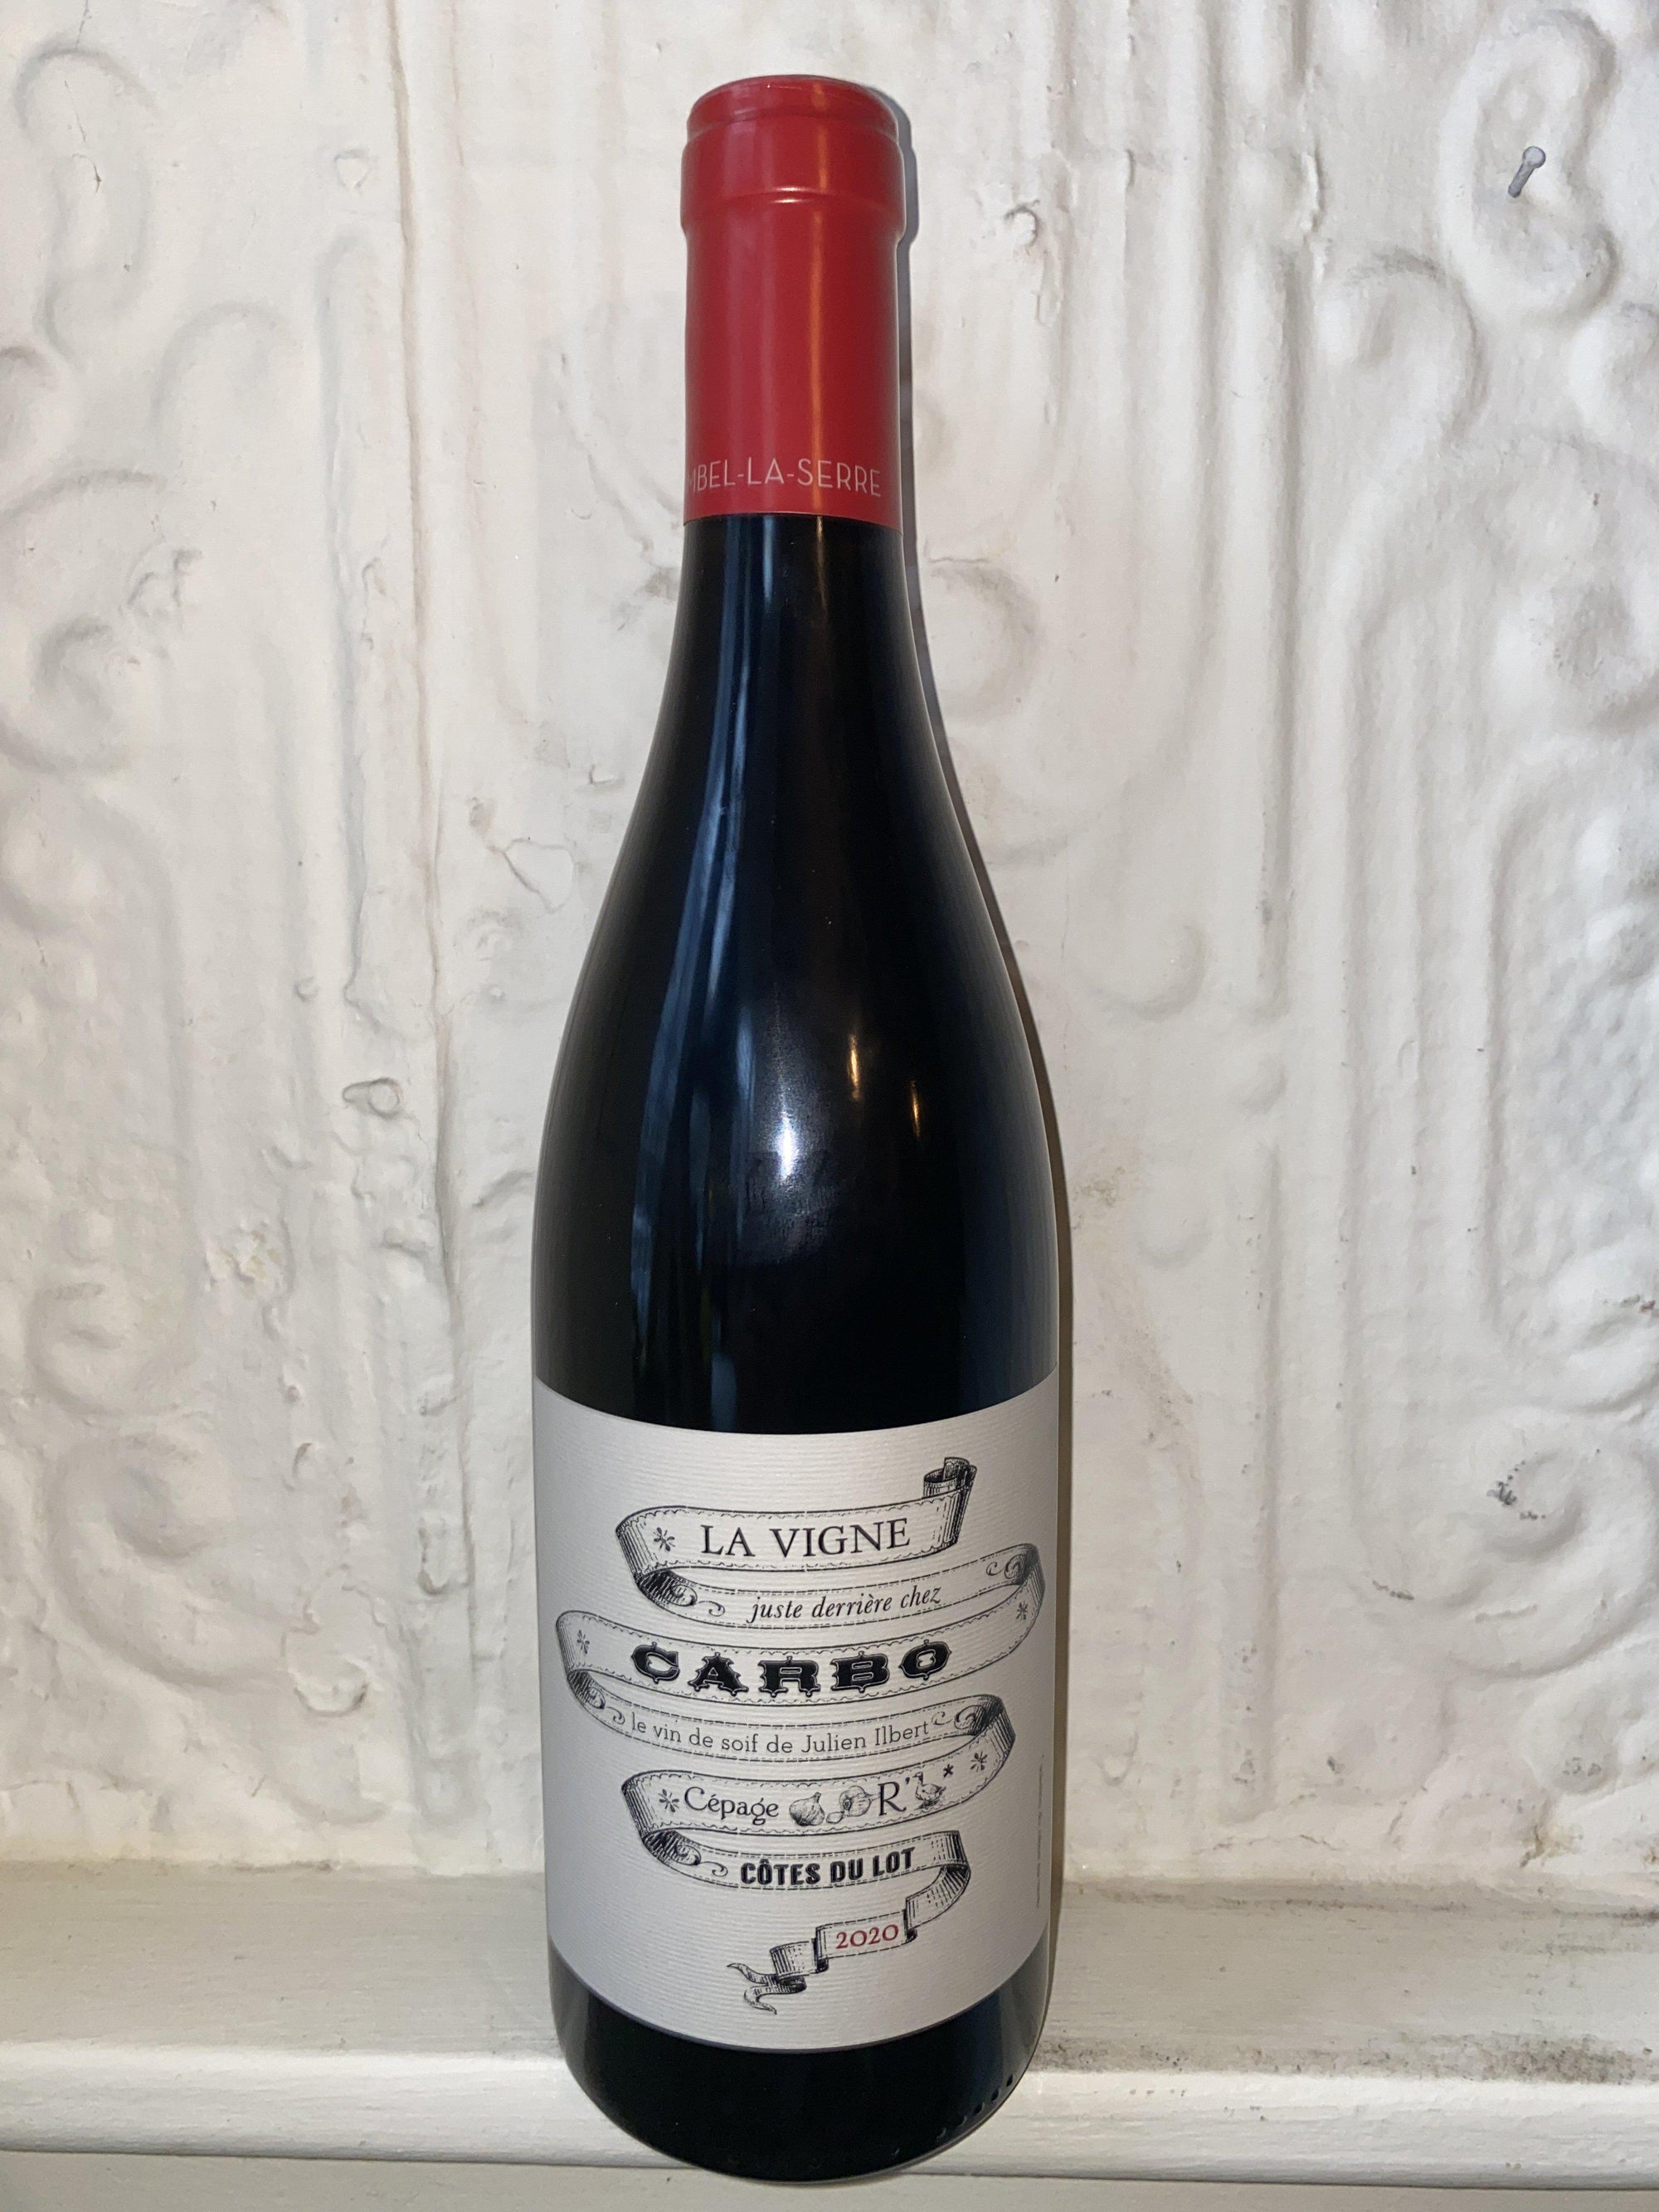 La Vigne Juste Derrière Chez Carbo, Château Combel La Serre 2020 (Cahors, France)-Wine-Bibber & Bell